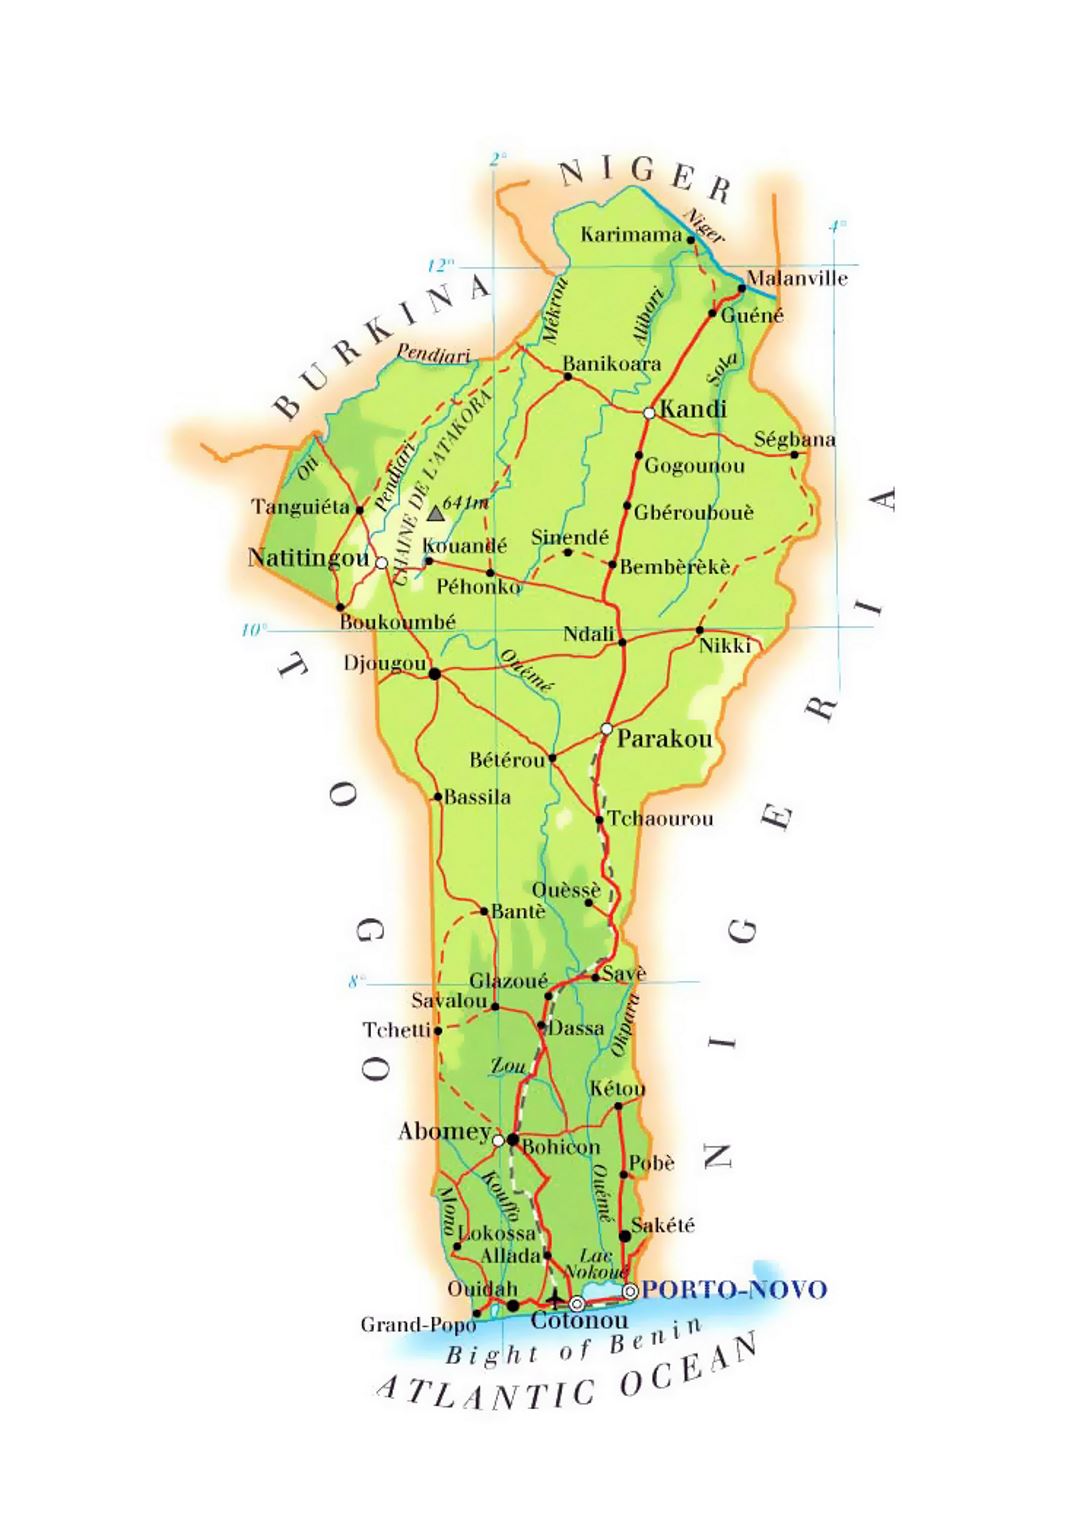 Detallado mapa de elevación de Benin con carreteras, ciudades y aeropuertos